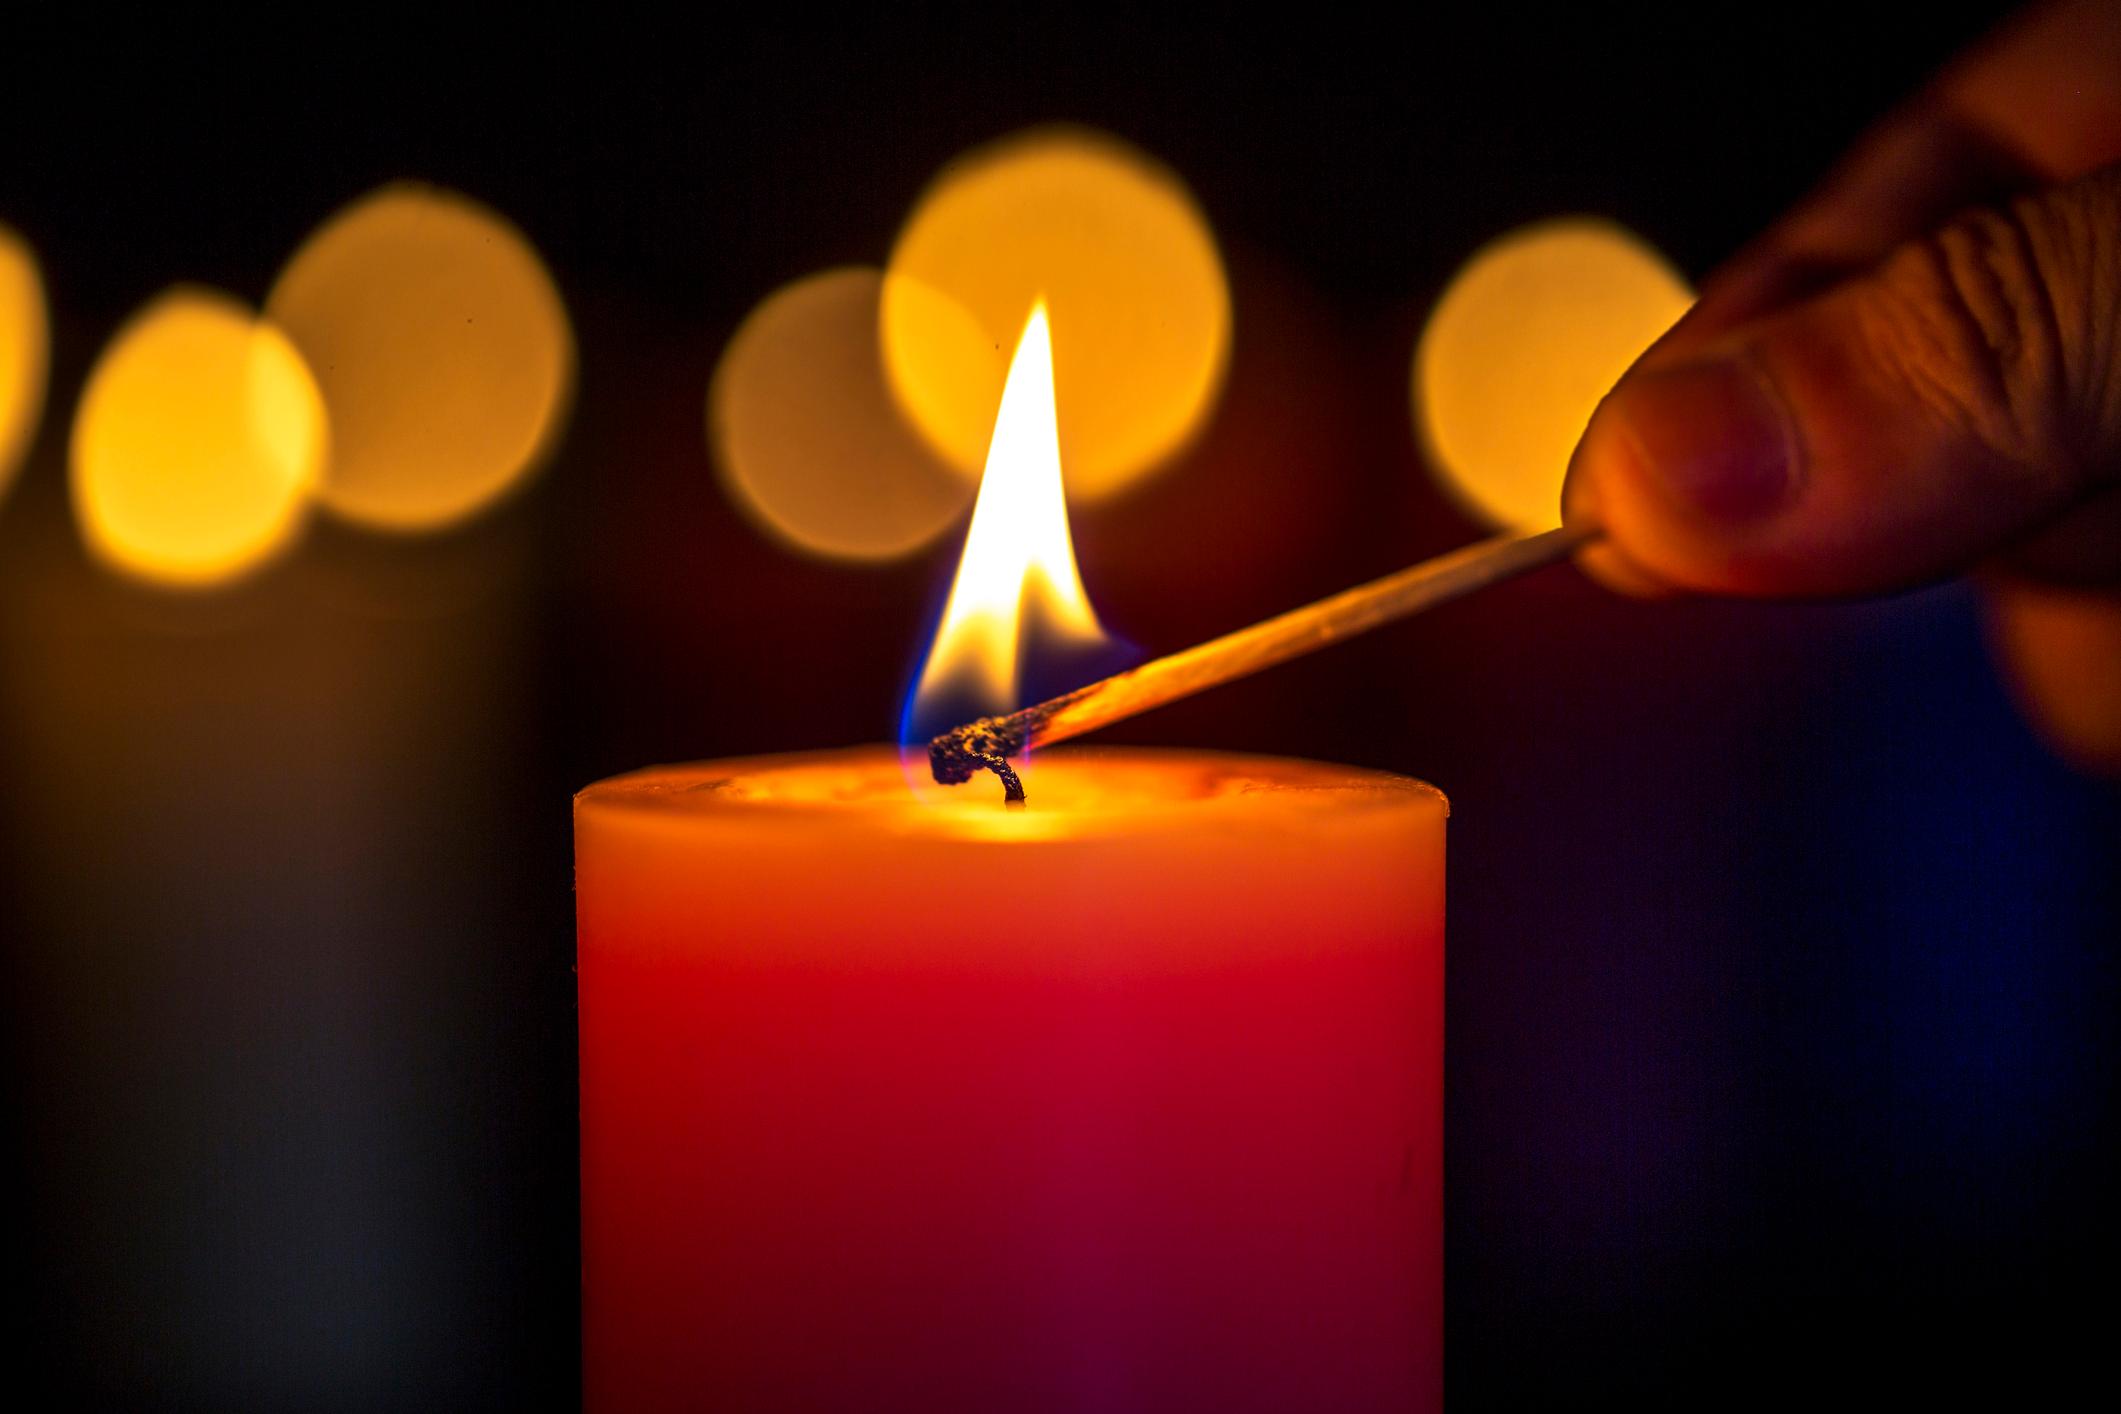 Disposer les bougies en gardant une distance de sécurité avec des objets qui pourraient s'enflammer